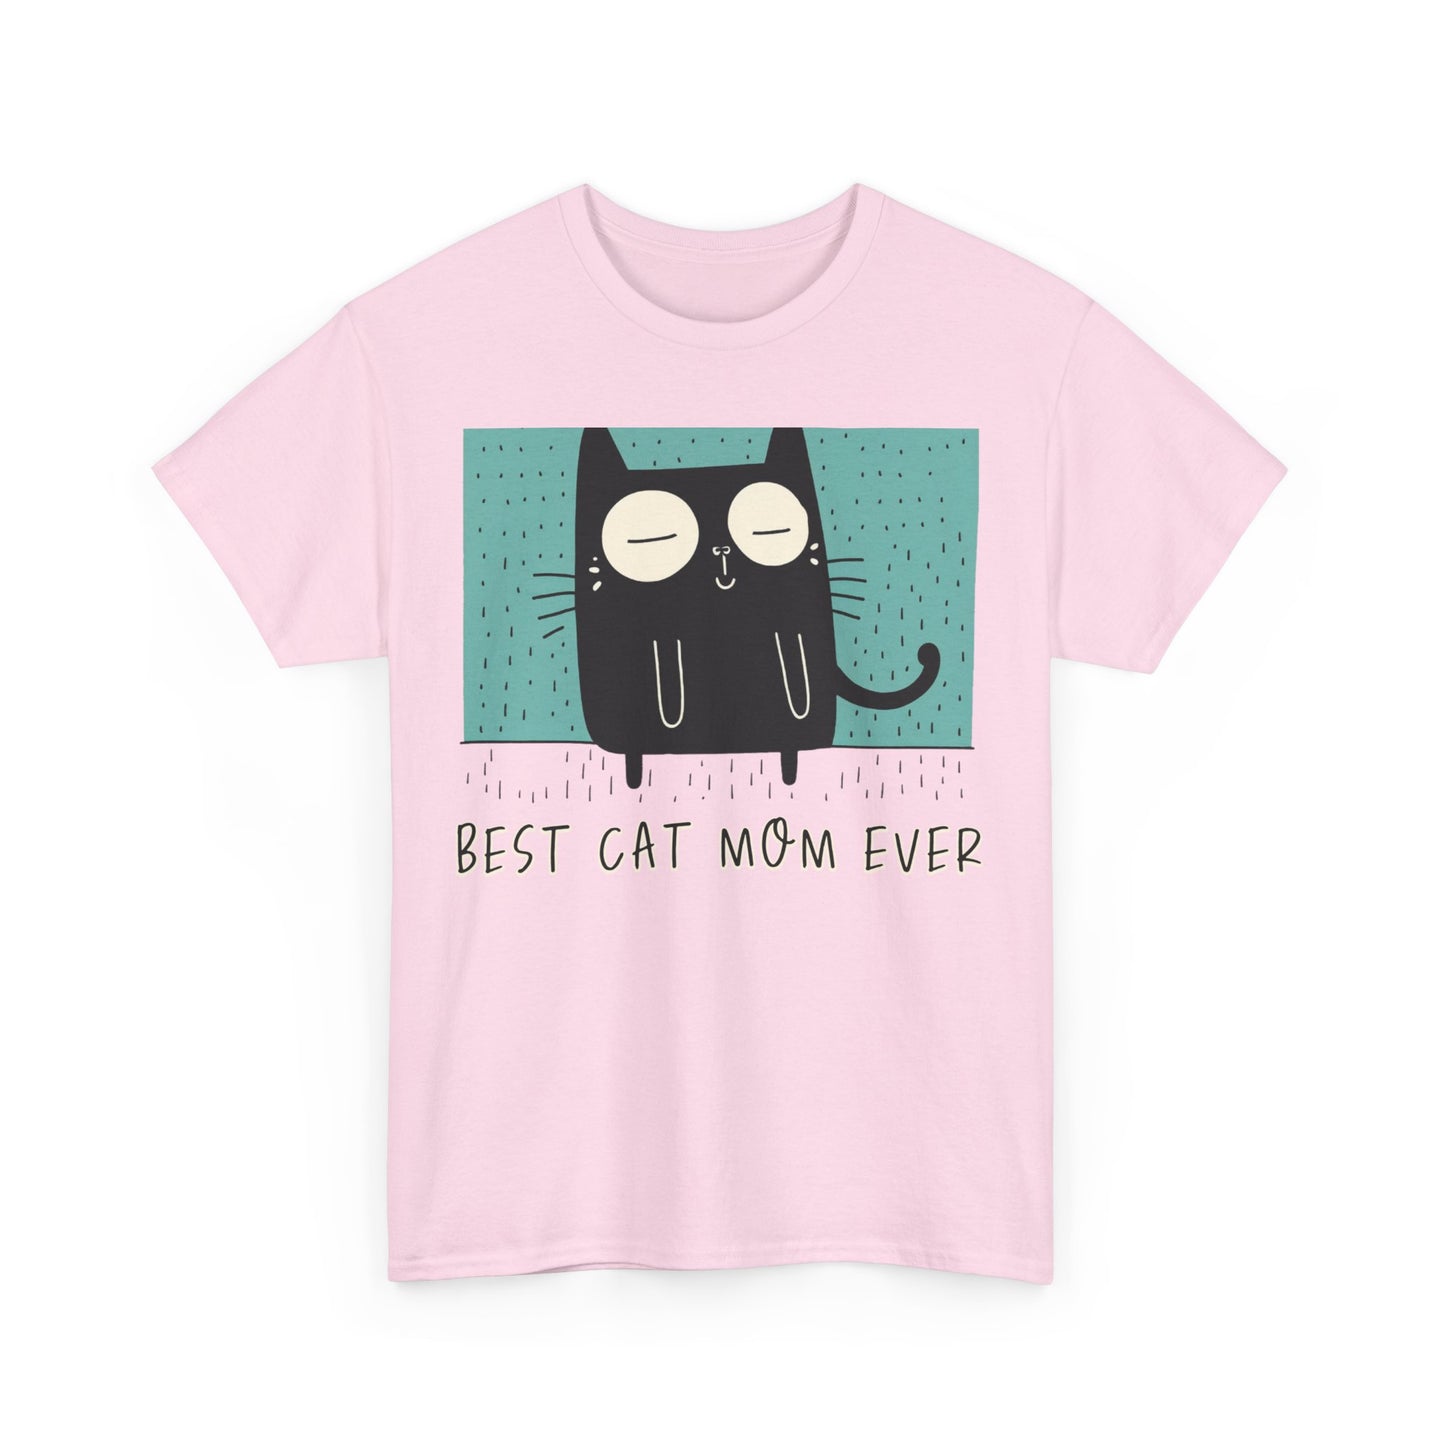 BEST Cat Mom T shirt